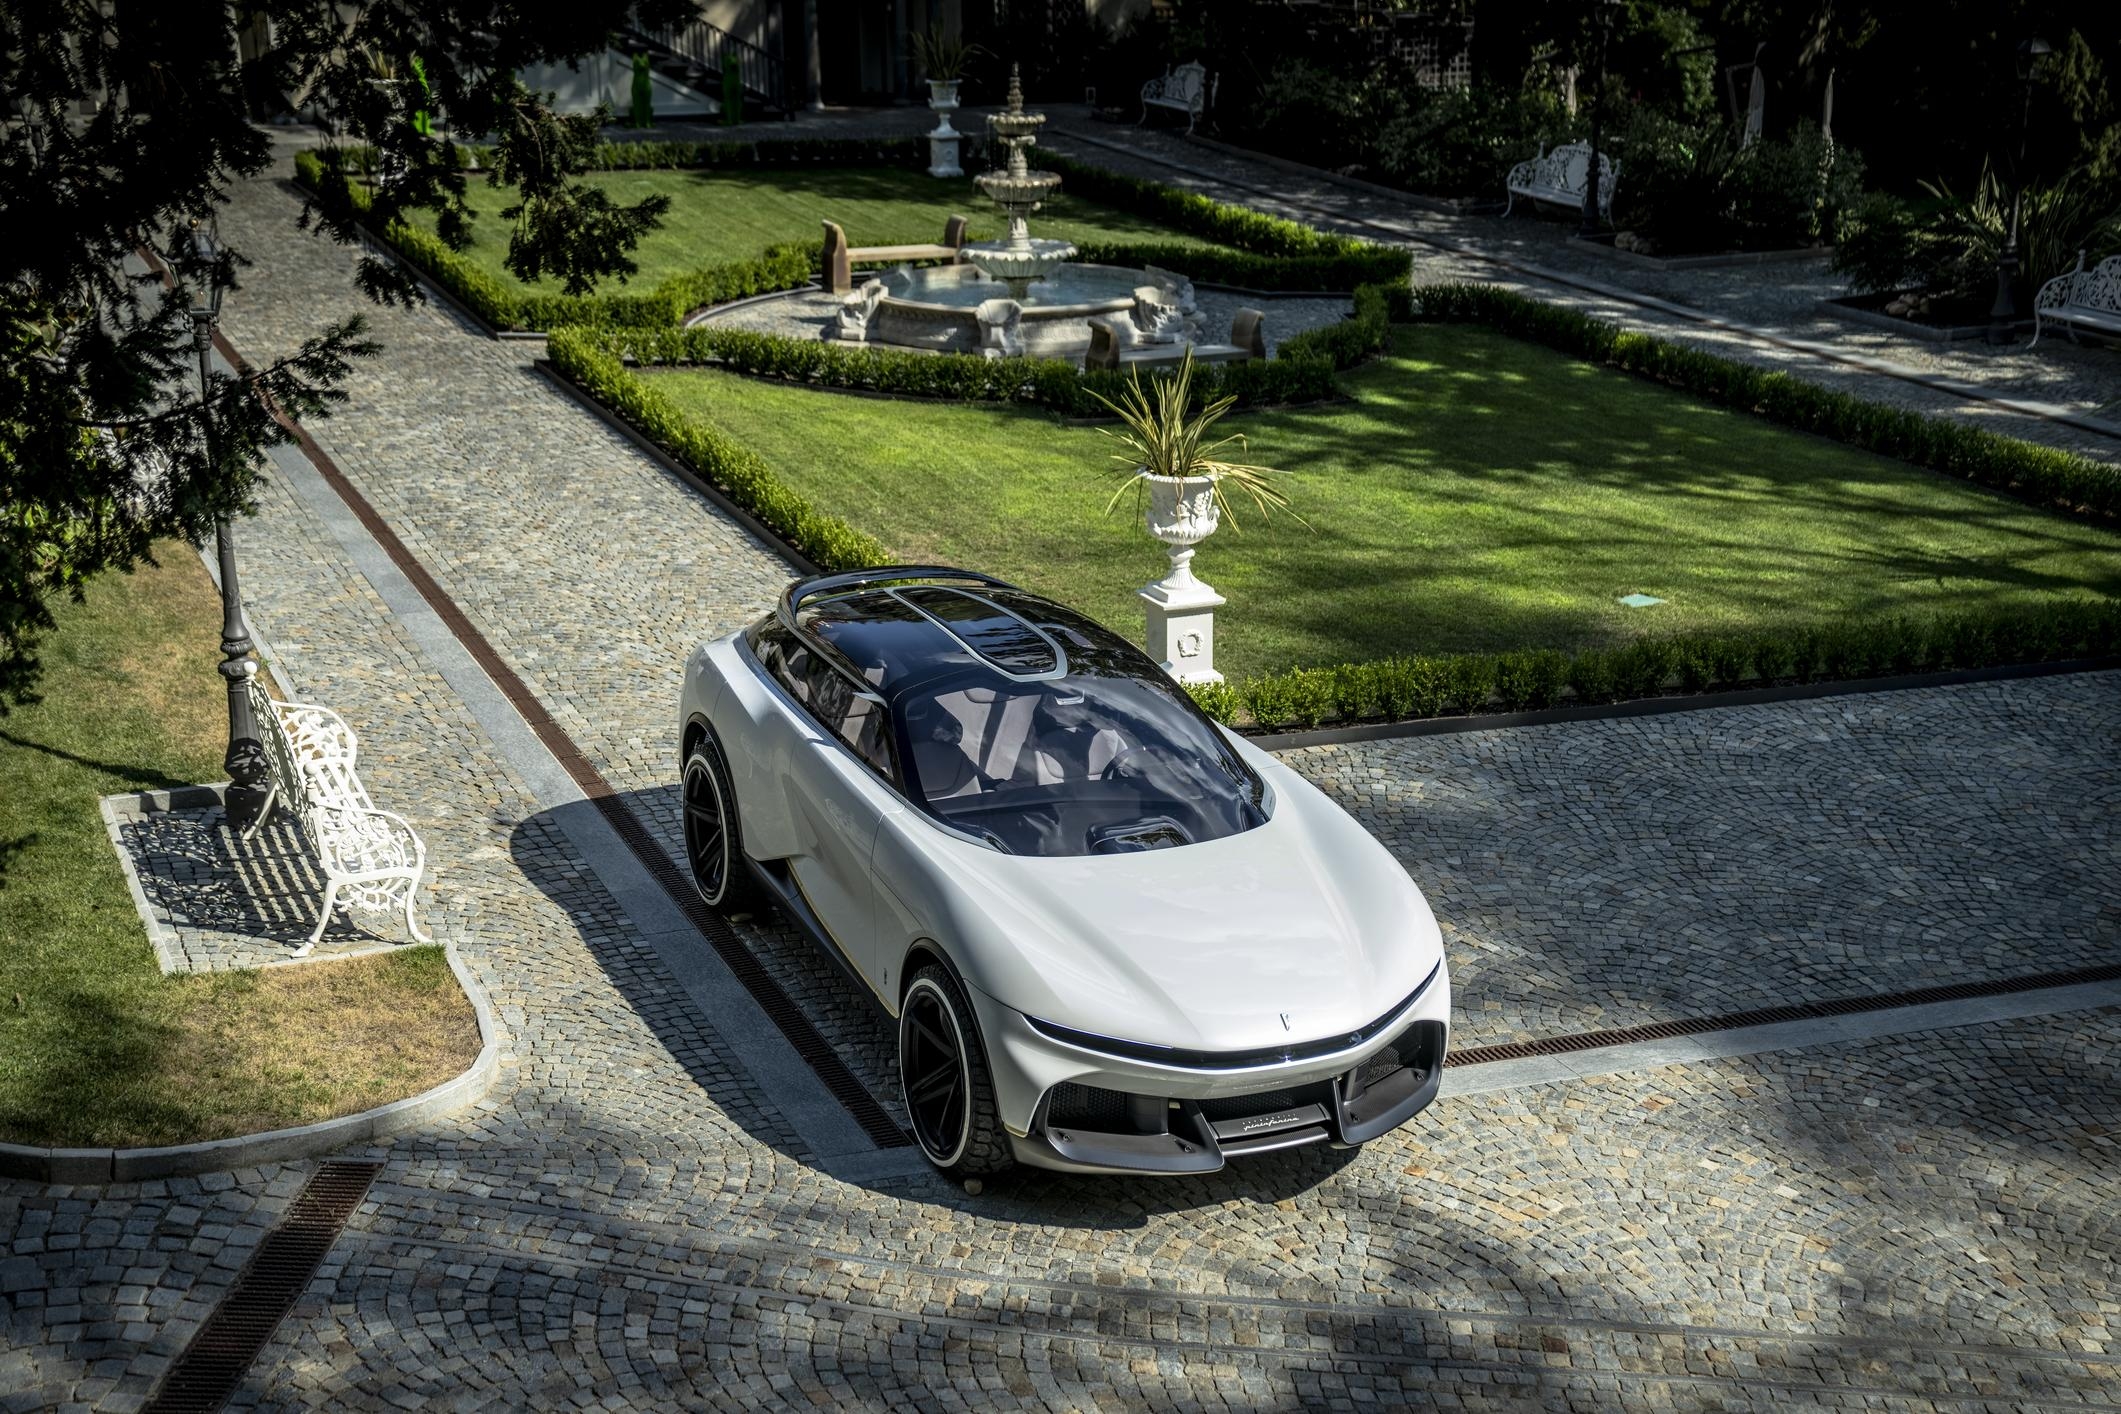 futuristic car sits in a shadowy green garden